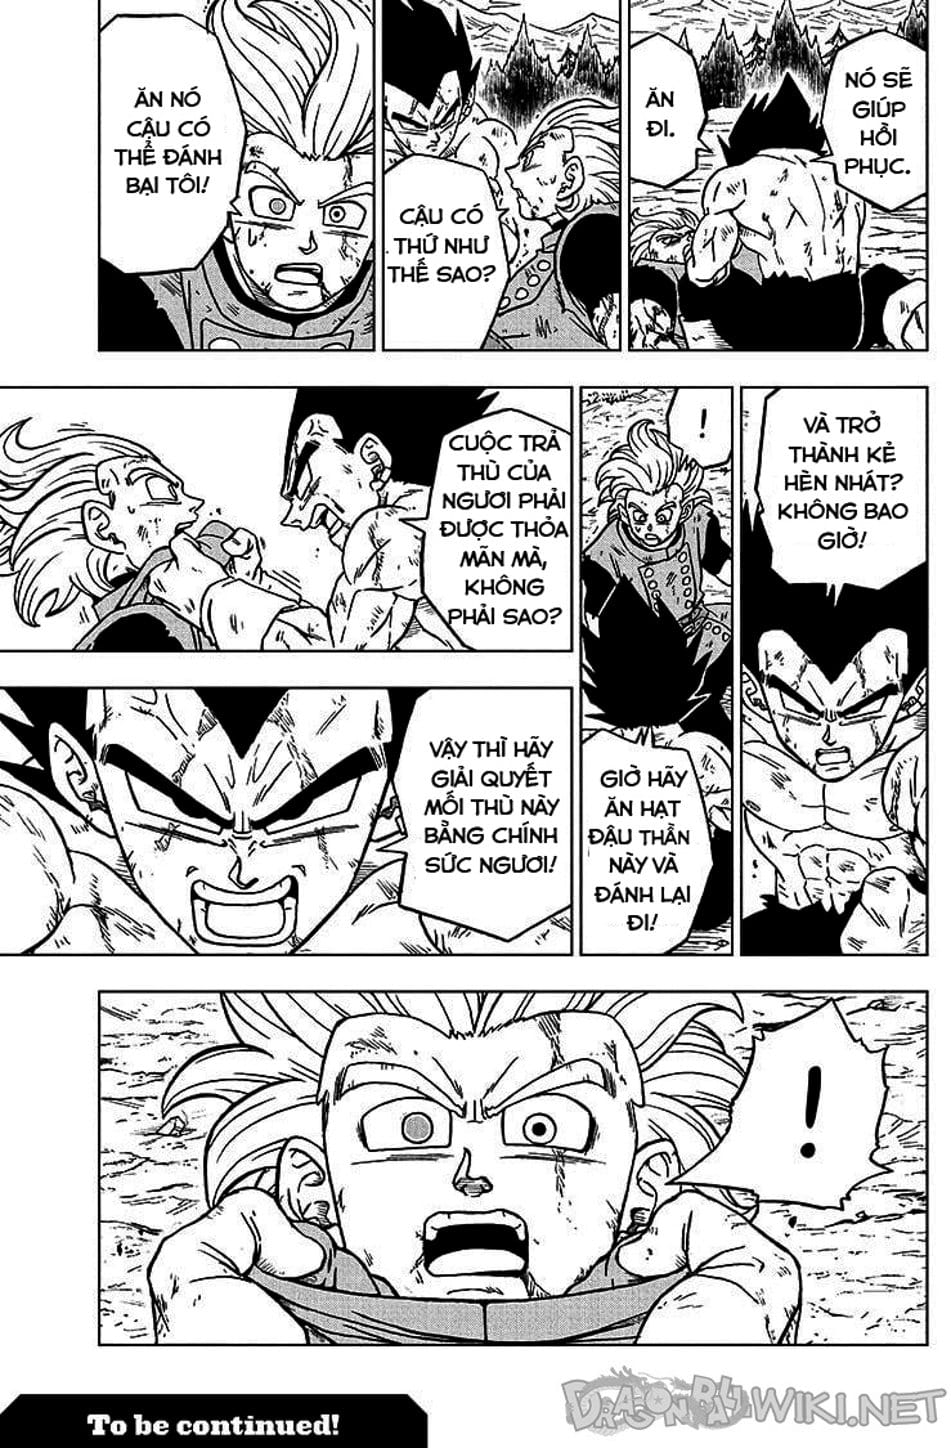 Truyện Tranh Truy Tìm Ngọc Rồng Siêu Cấp - Dragon Ball Super trang 3155